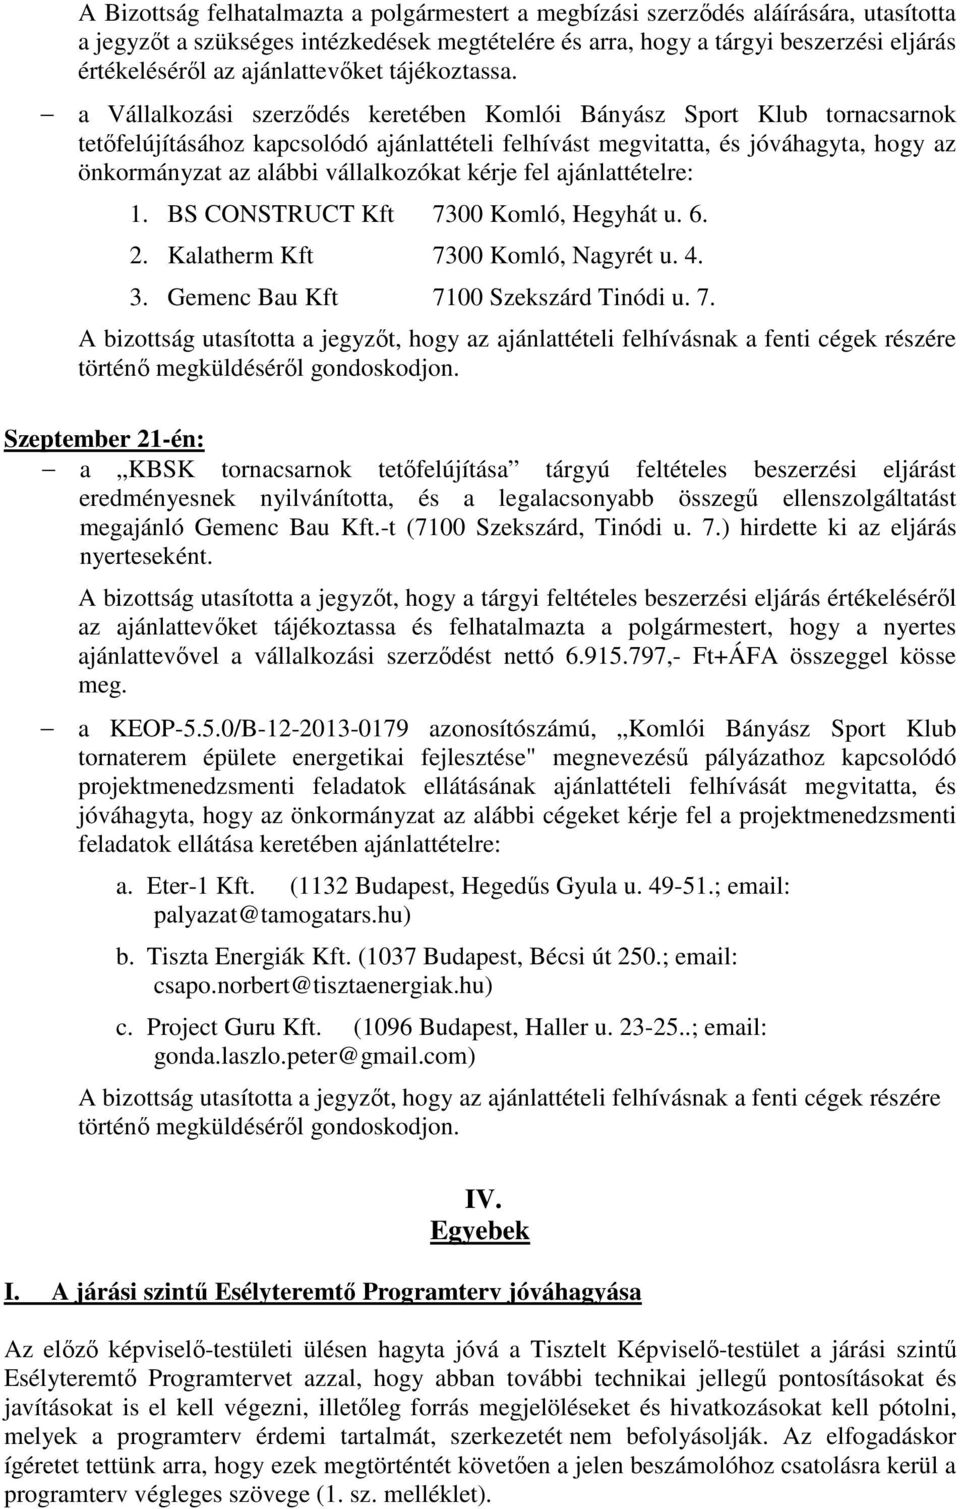 a Vállalkozási szerződés keretében Komlói Bányász Sport Klub tornacsarnok tetőfelújításához kapcsolódó ajánlattételi felhívást megvitatta, és jóváhagyta, hogy az önkormányzat az alábbi vállalkozókat